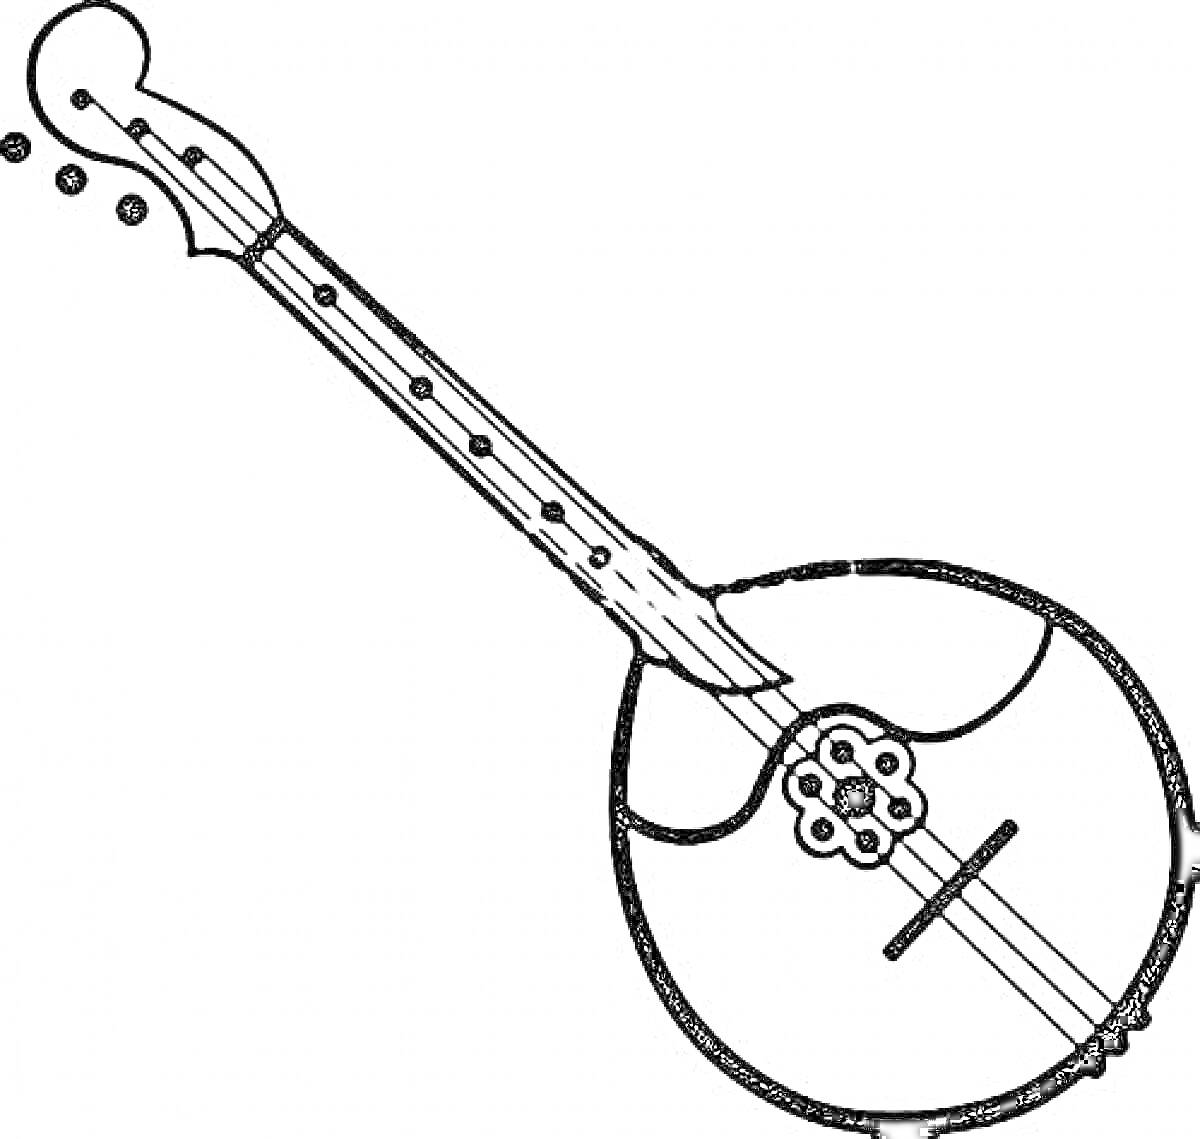 Музыкальный инструмент с длинным грифом и круглым корпусом с декором